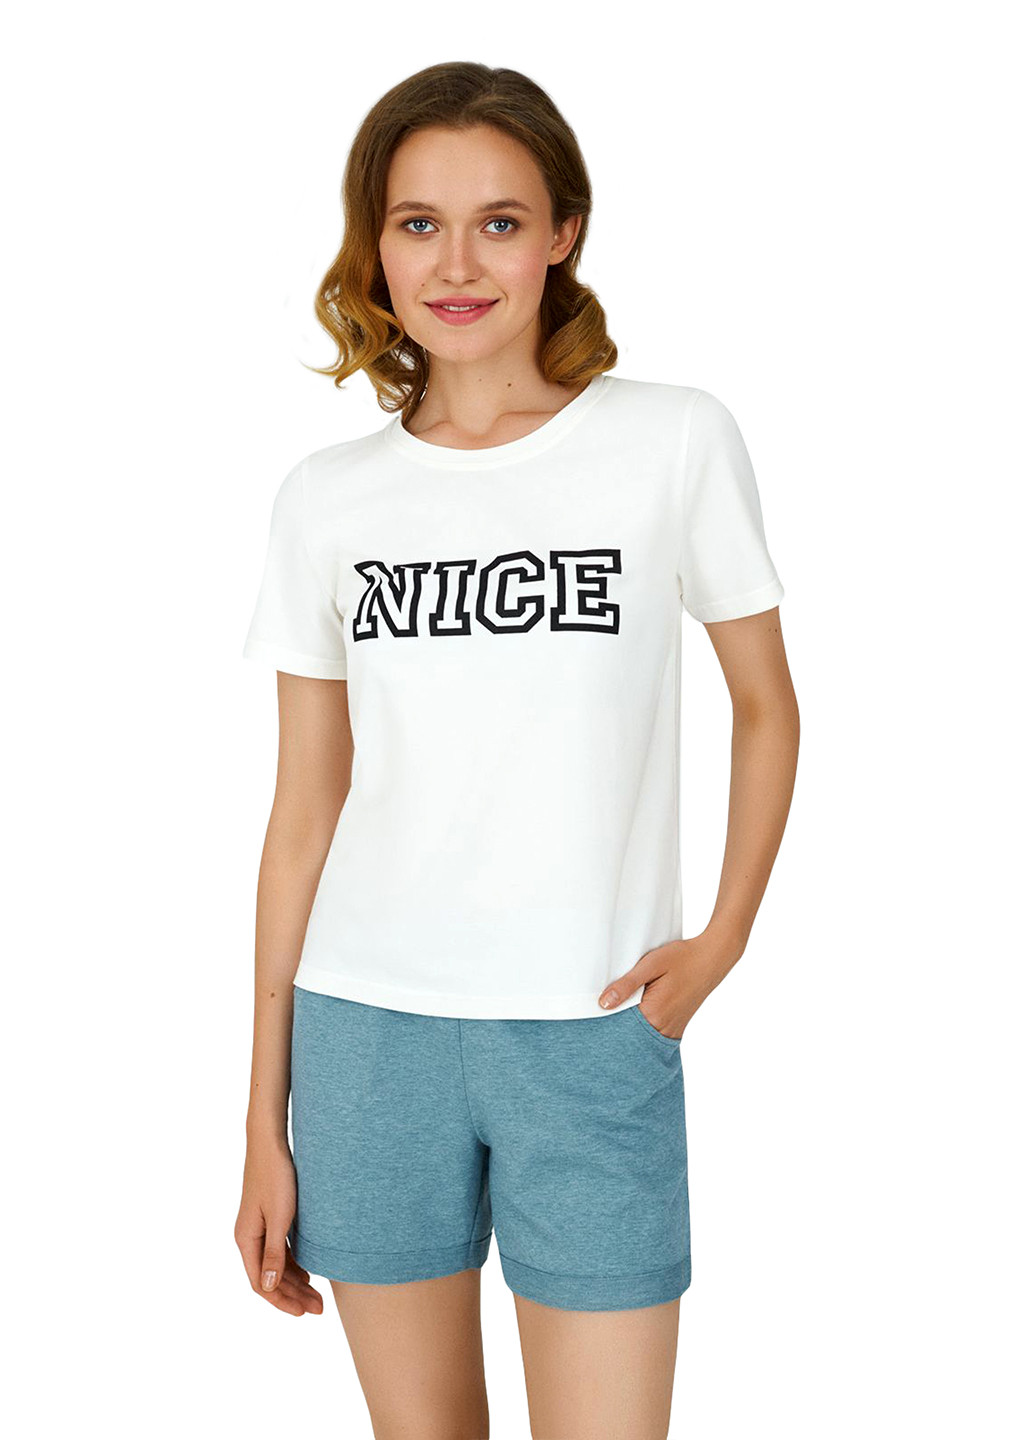 Айвори всесезон пижама (футболка, шорты) футболка + шорты Ellen